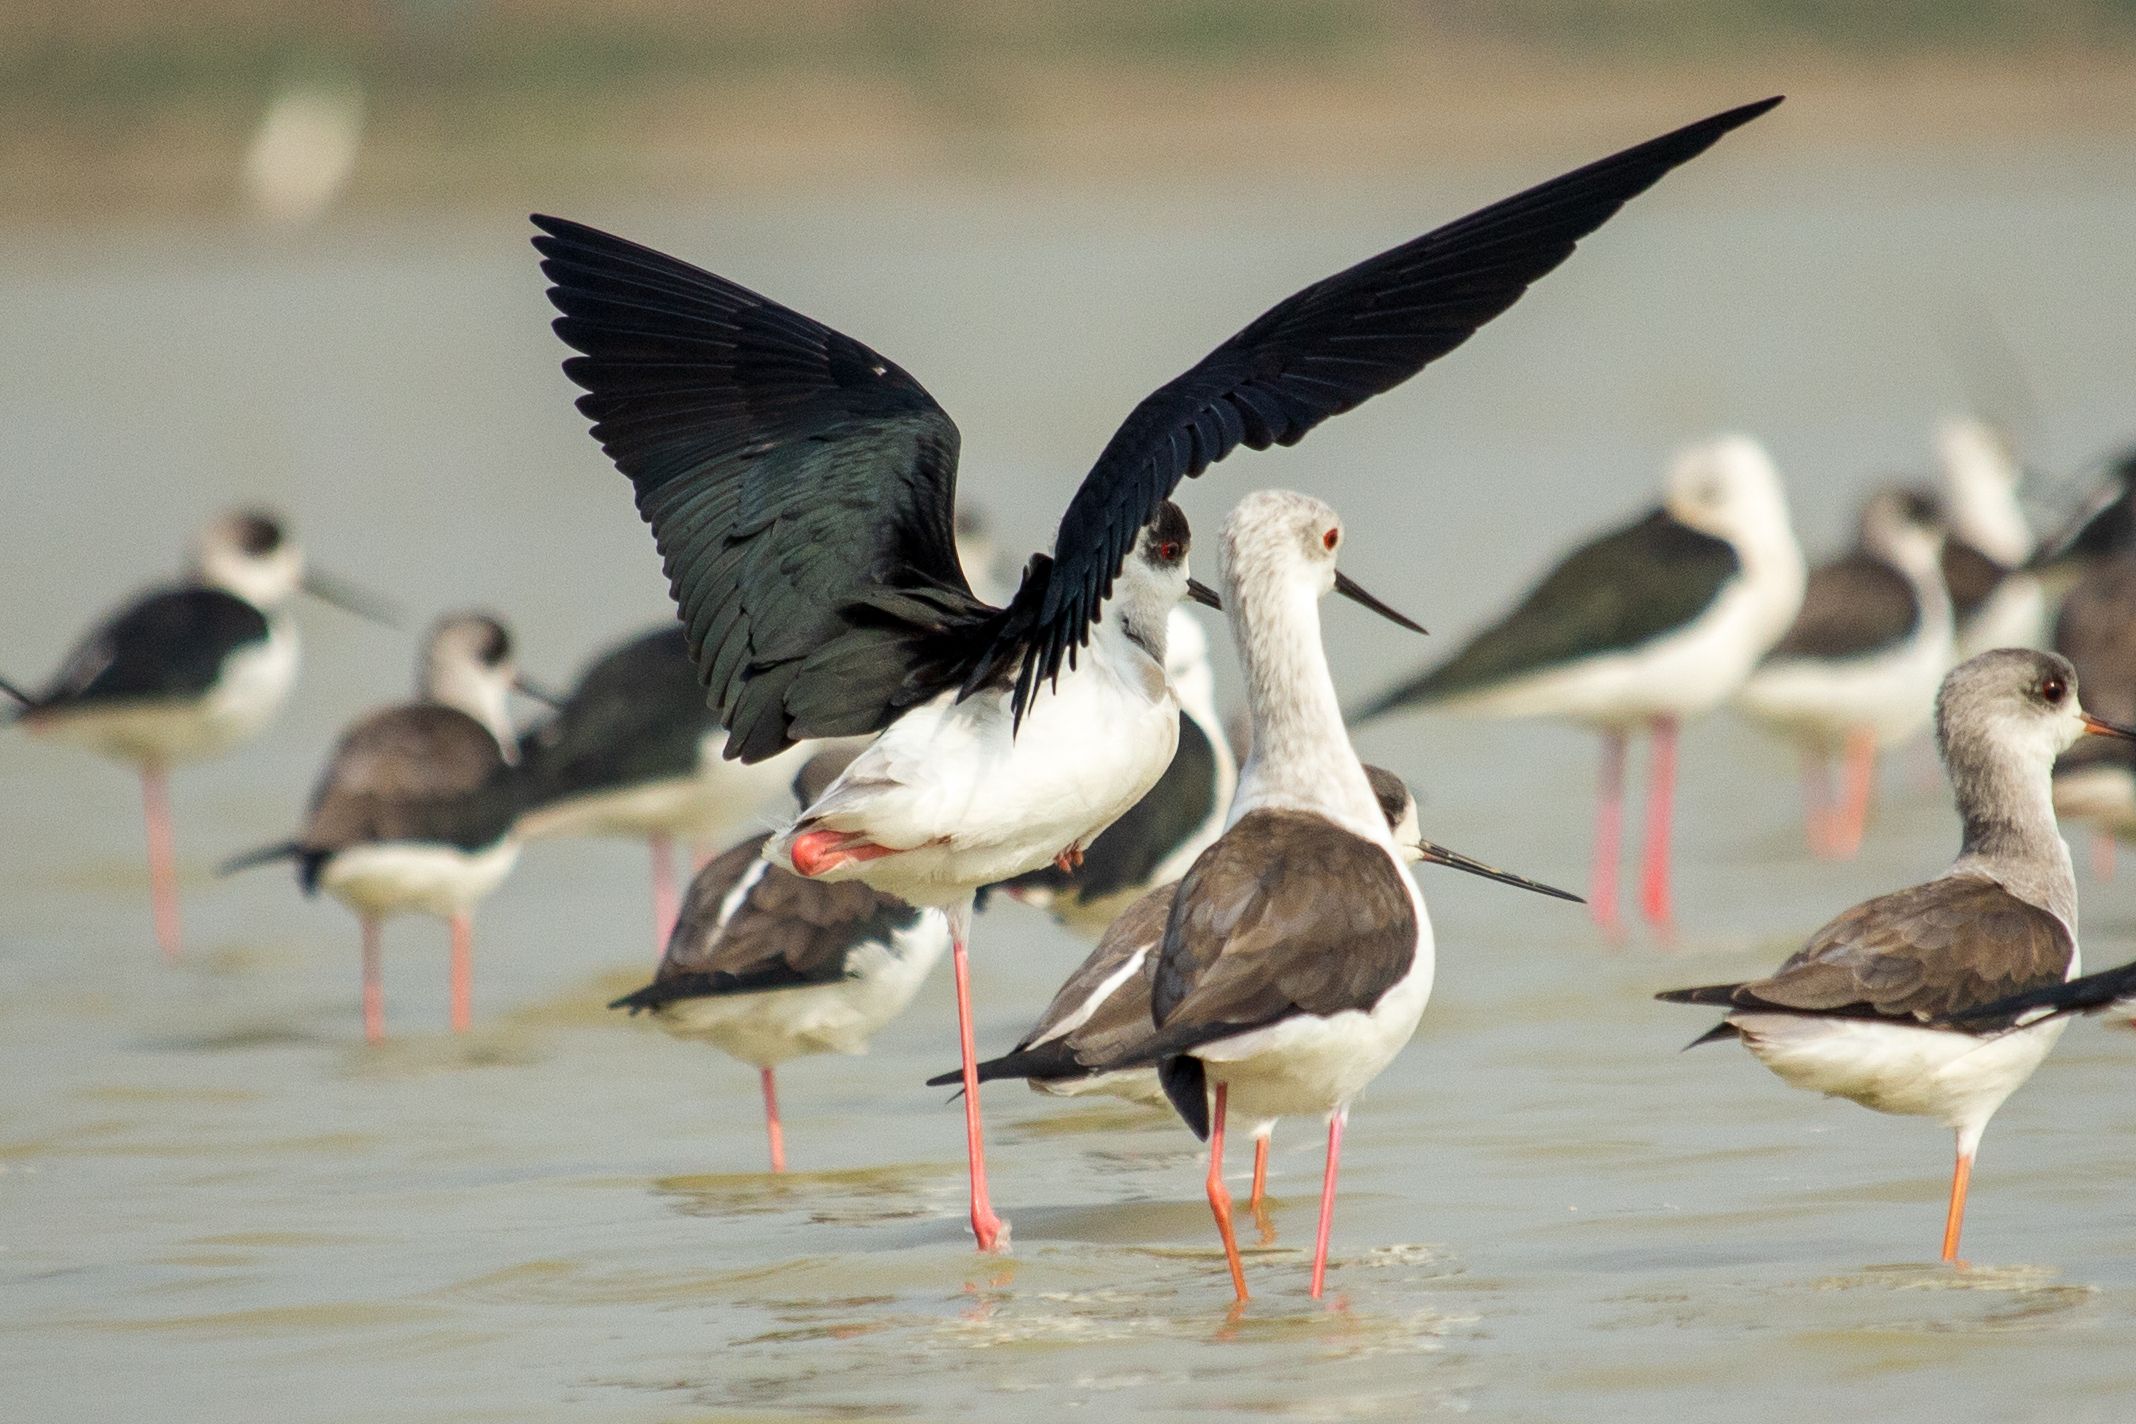 #bird #blackwimgedstilt #wild #natgeo #birdphoto #nature #naturephotography #asia #bangladesh, Shadab Ishtiyak